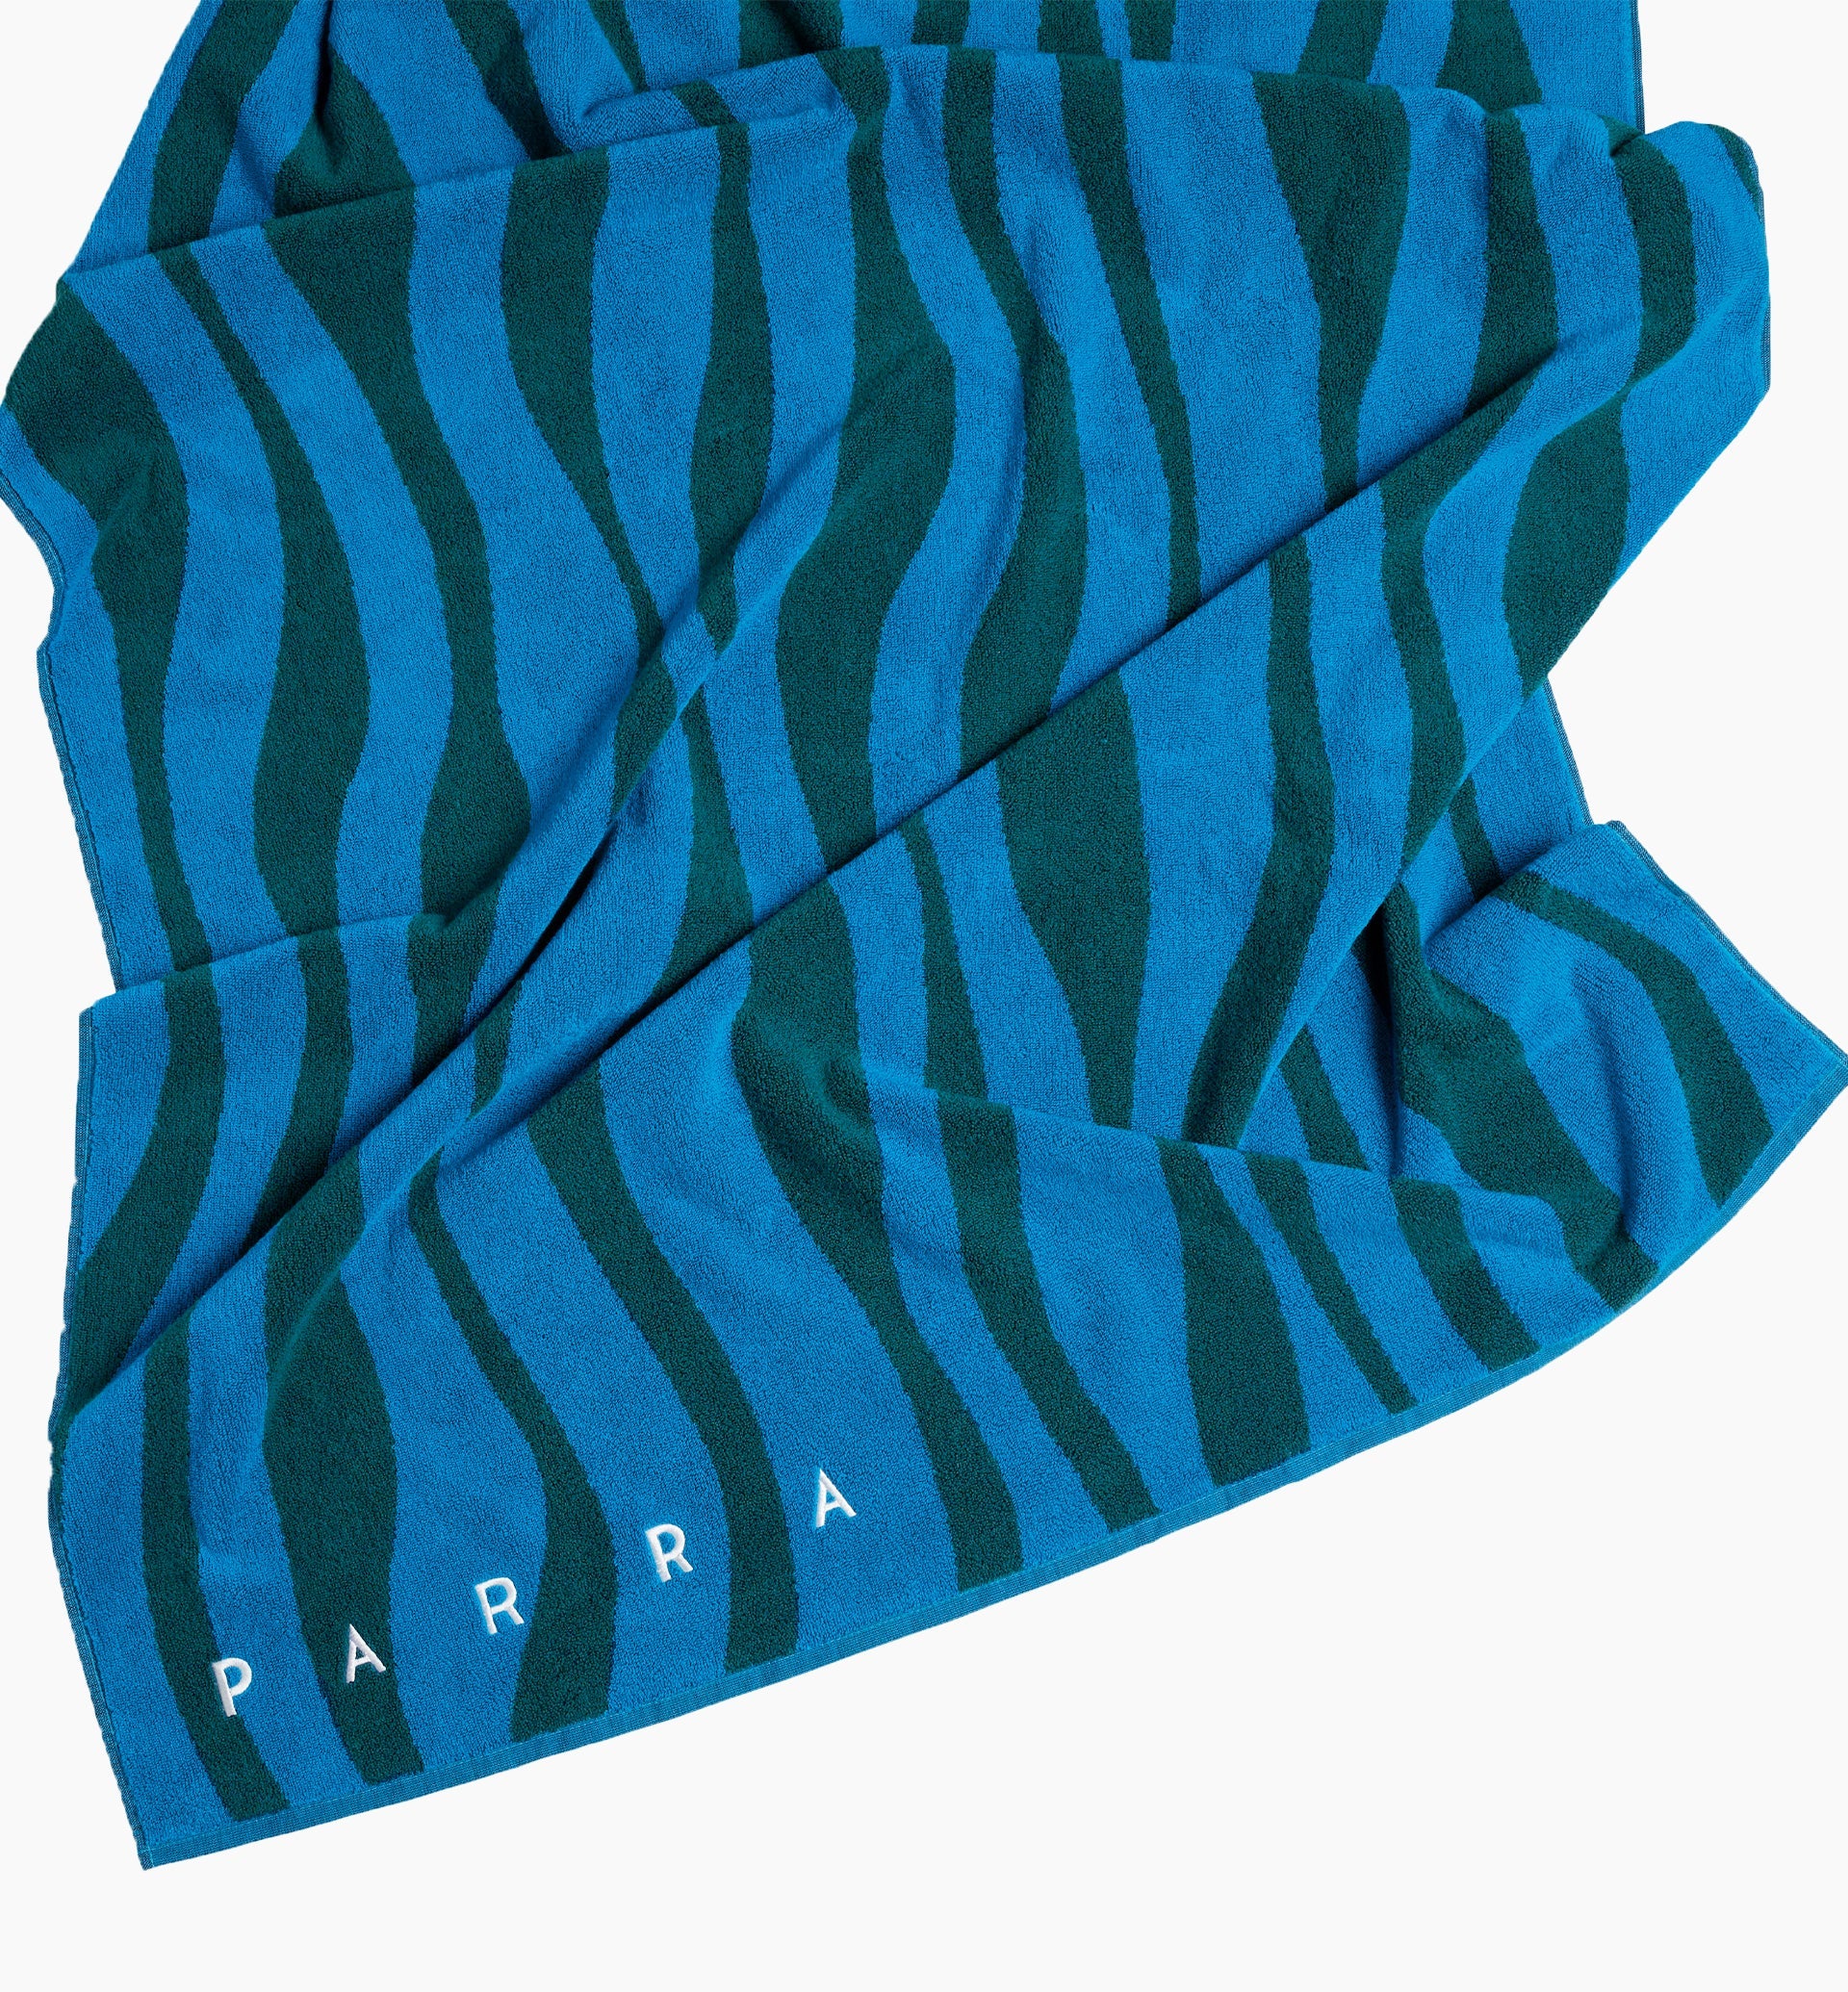 Parra - aqua weed waves beach towel